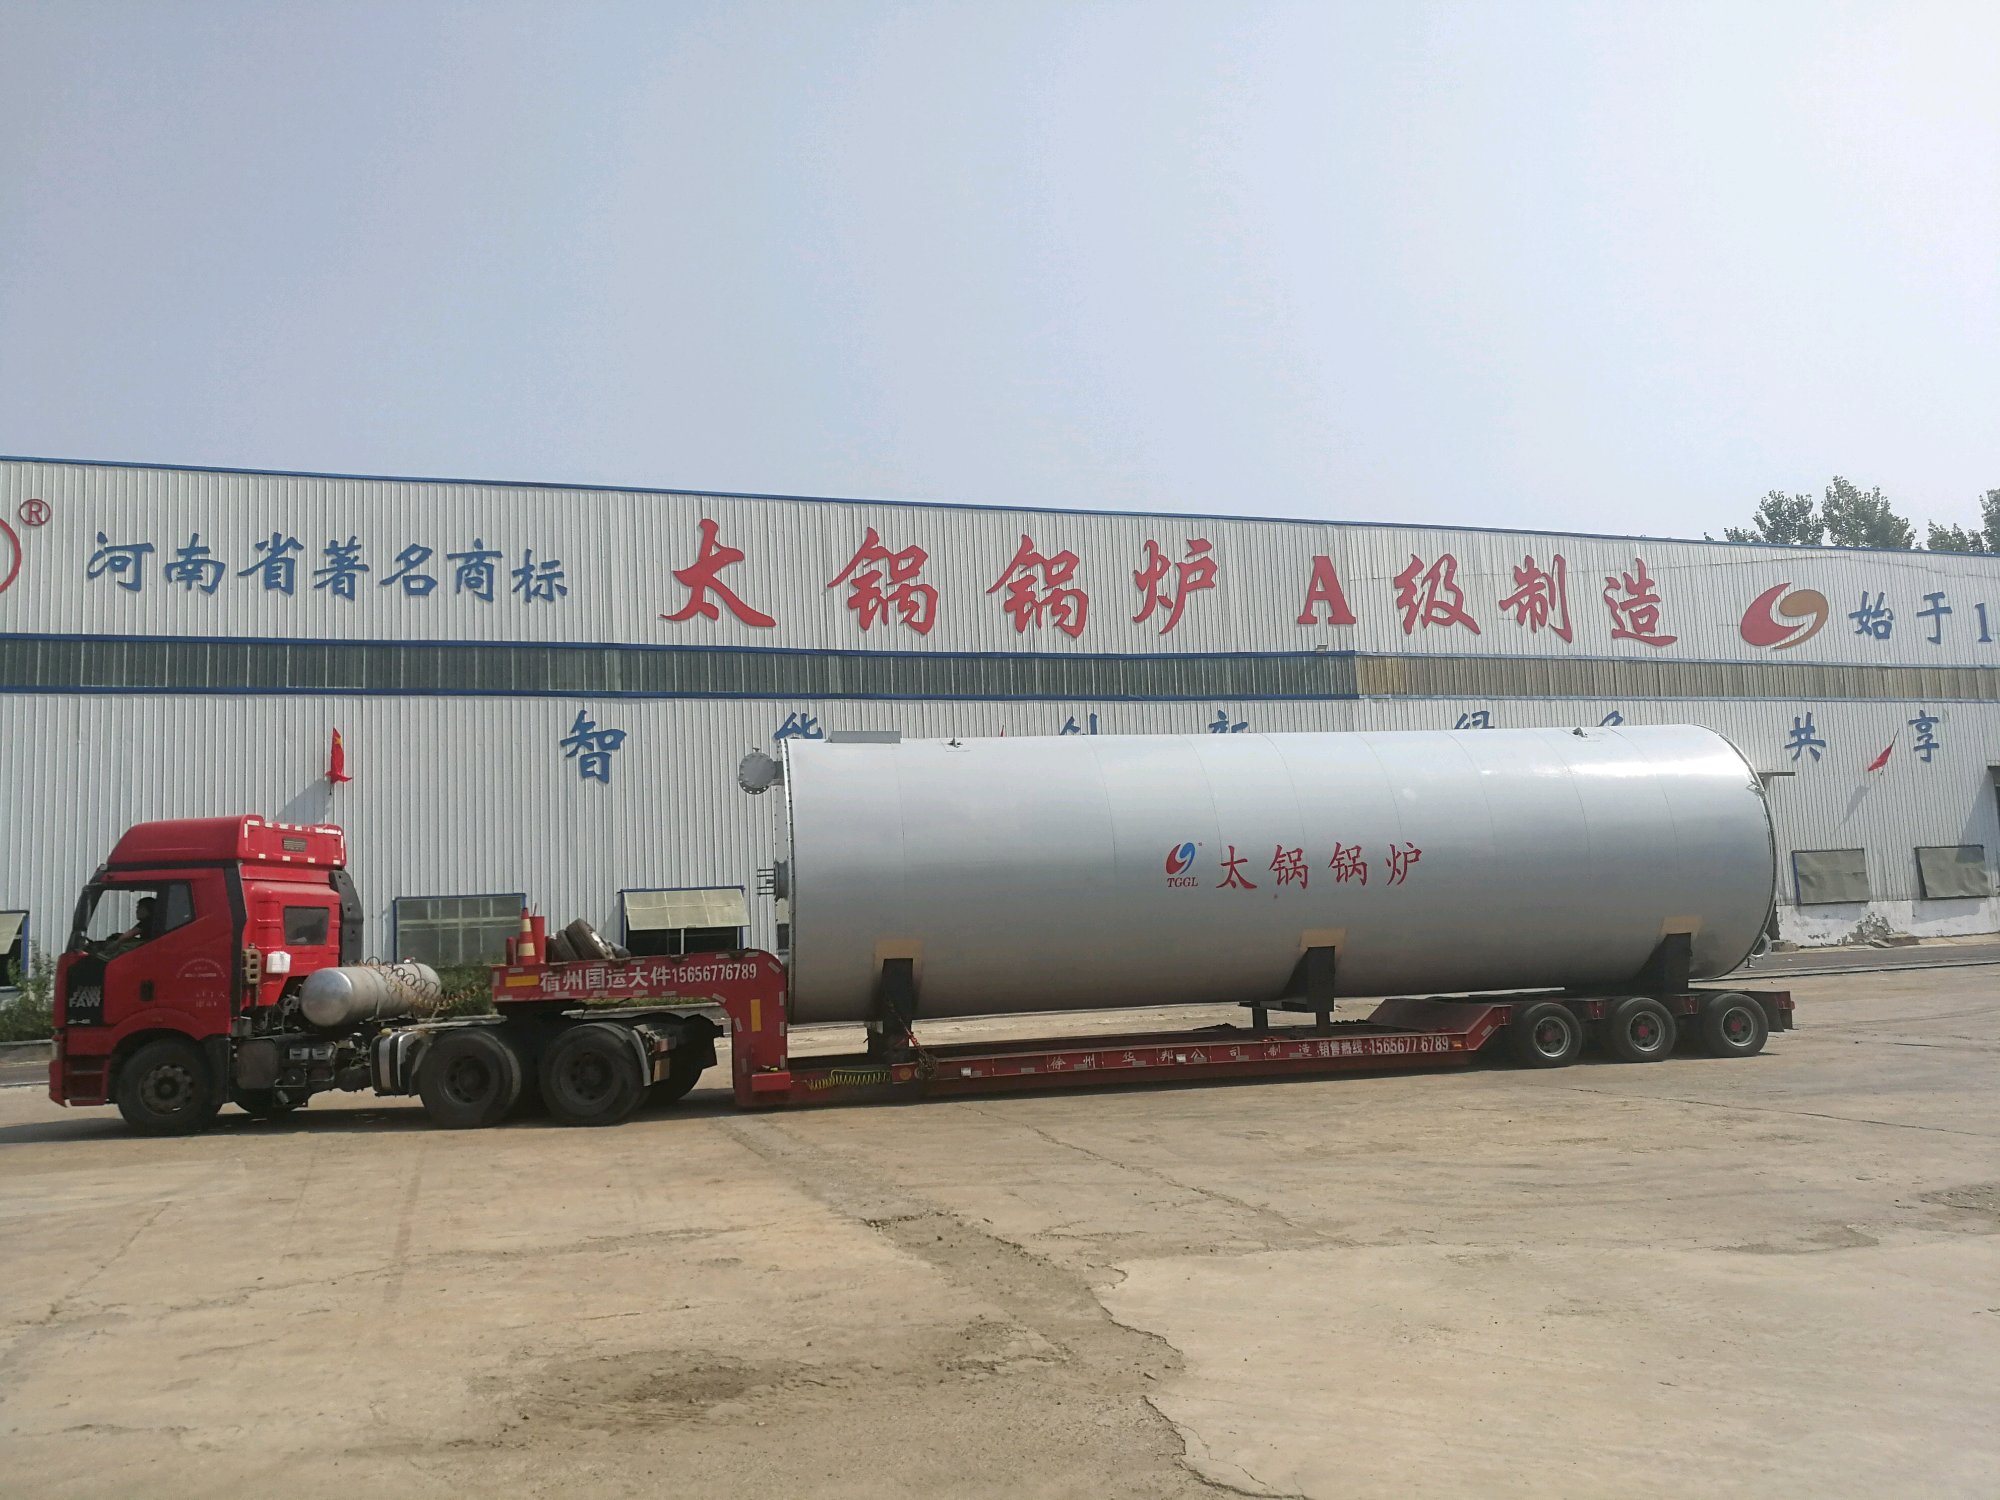 上海太锅锅炉制造有限公司燃气锅炉和导热油炉发货中